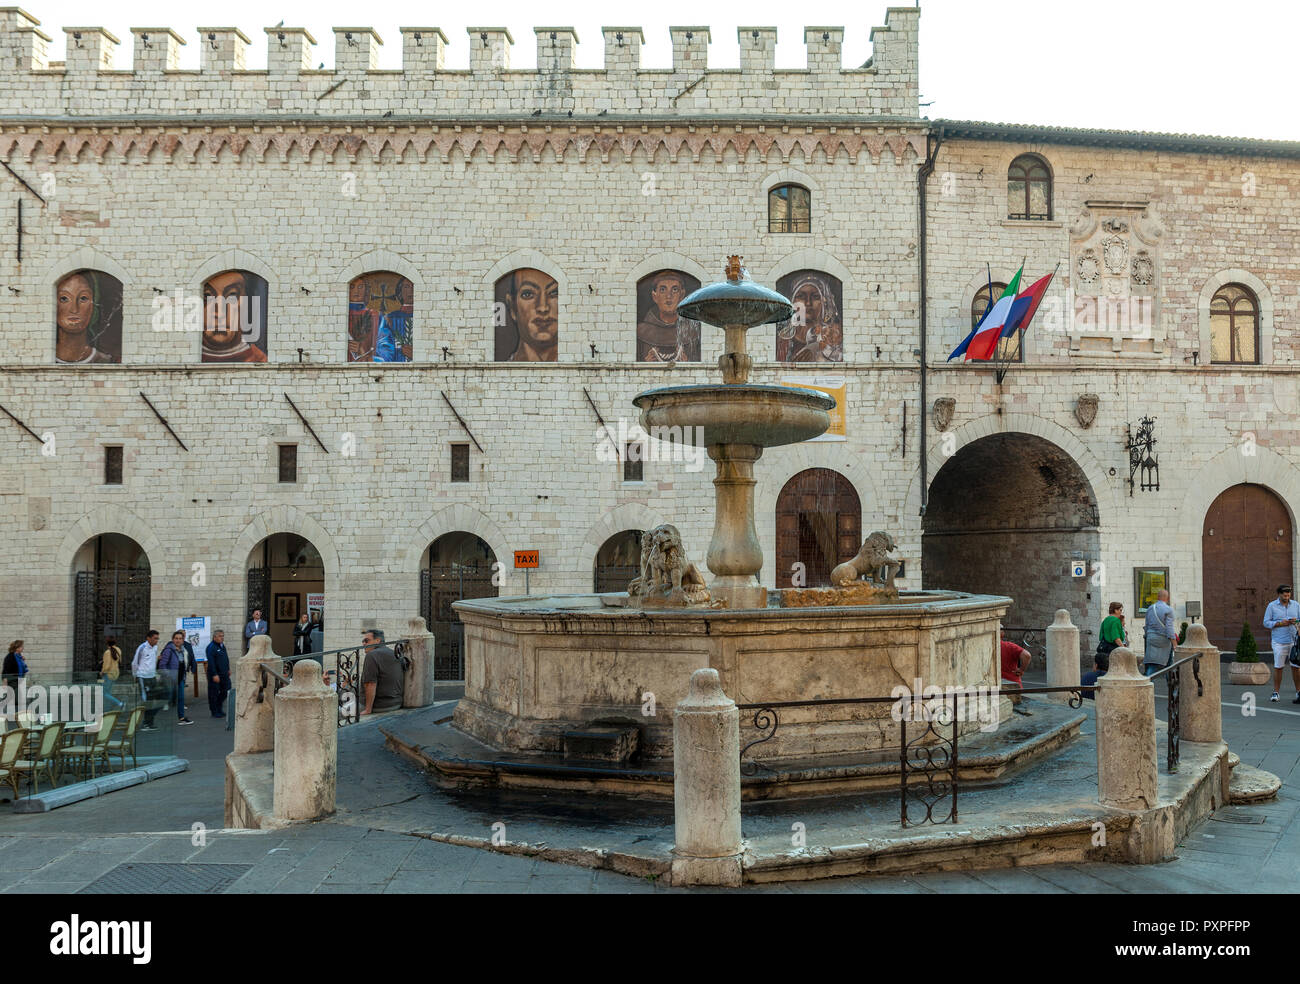 Fontana storica raffigurante tre leoni, Piazza del comune, Assisi. Perugia, Umbria, Italia Foto Stock